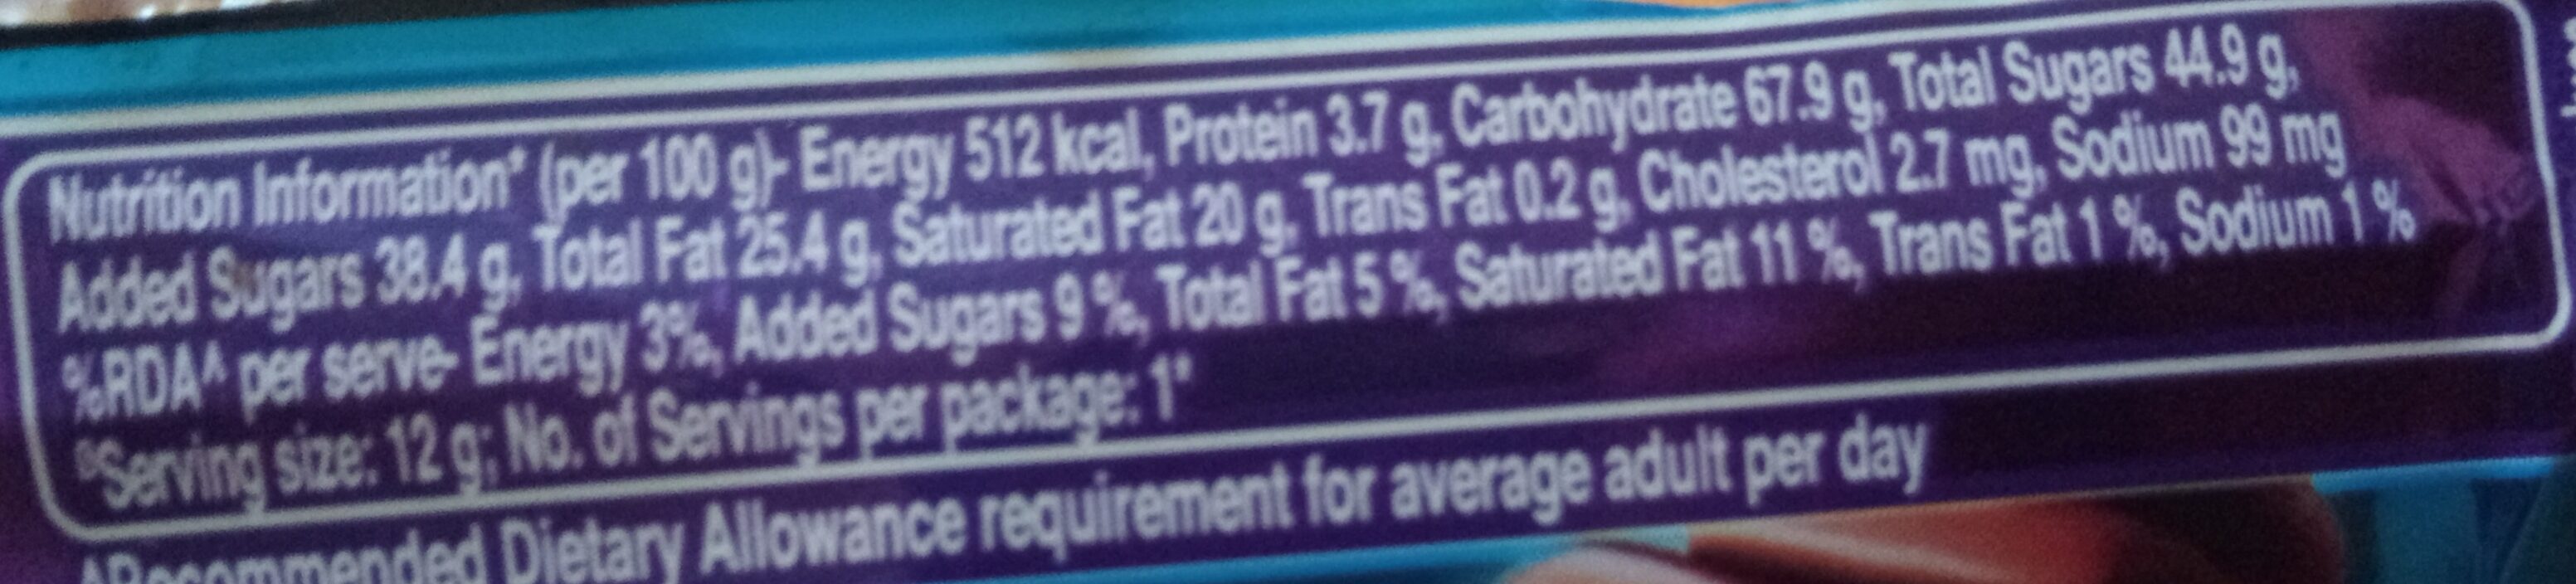 Perk - Nutrition facts